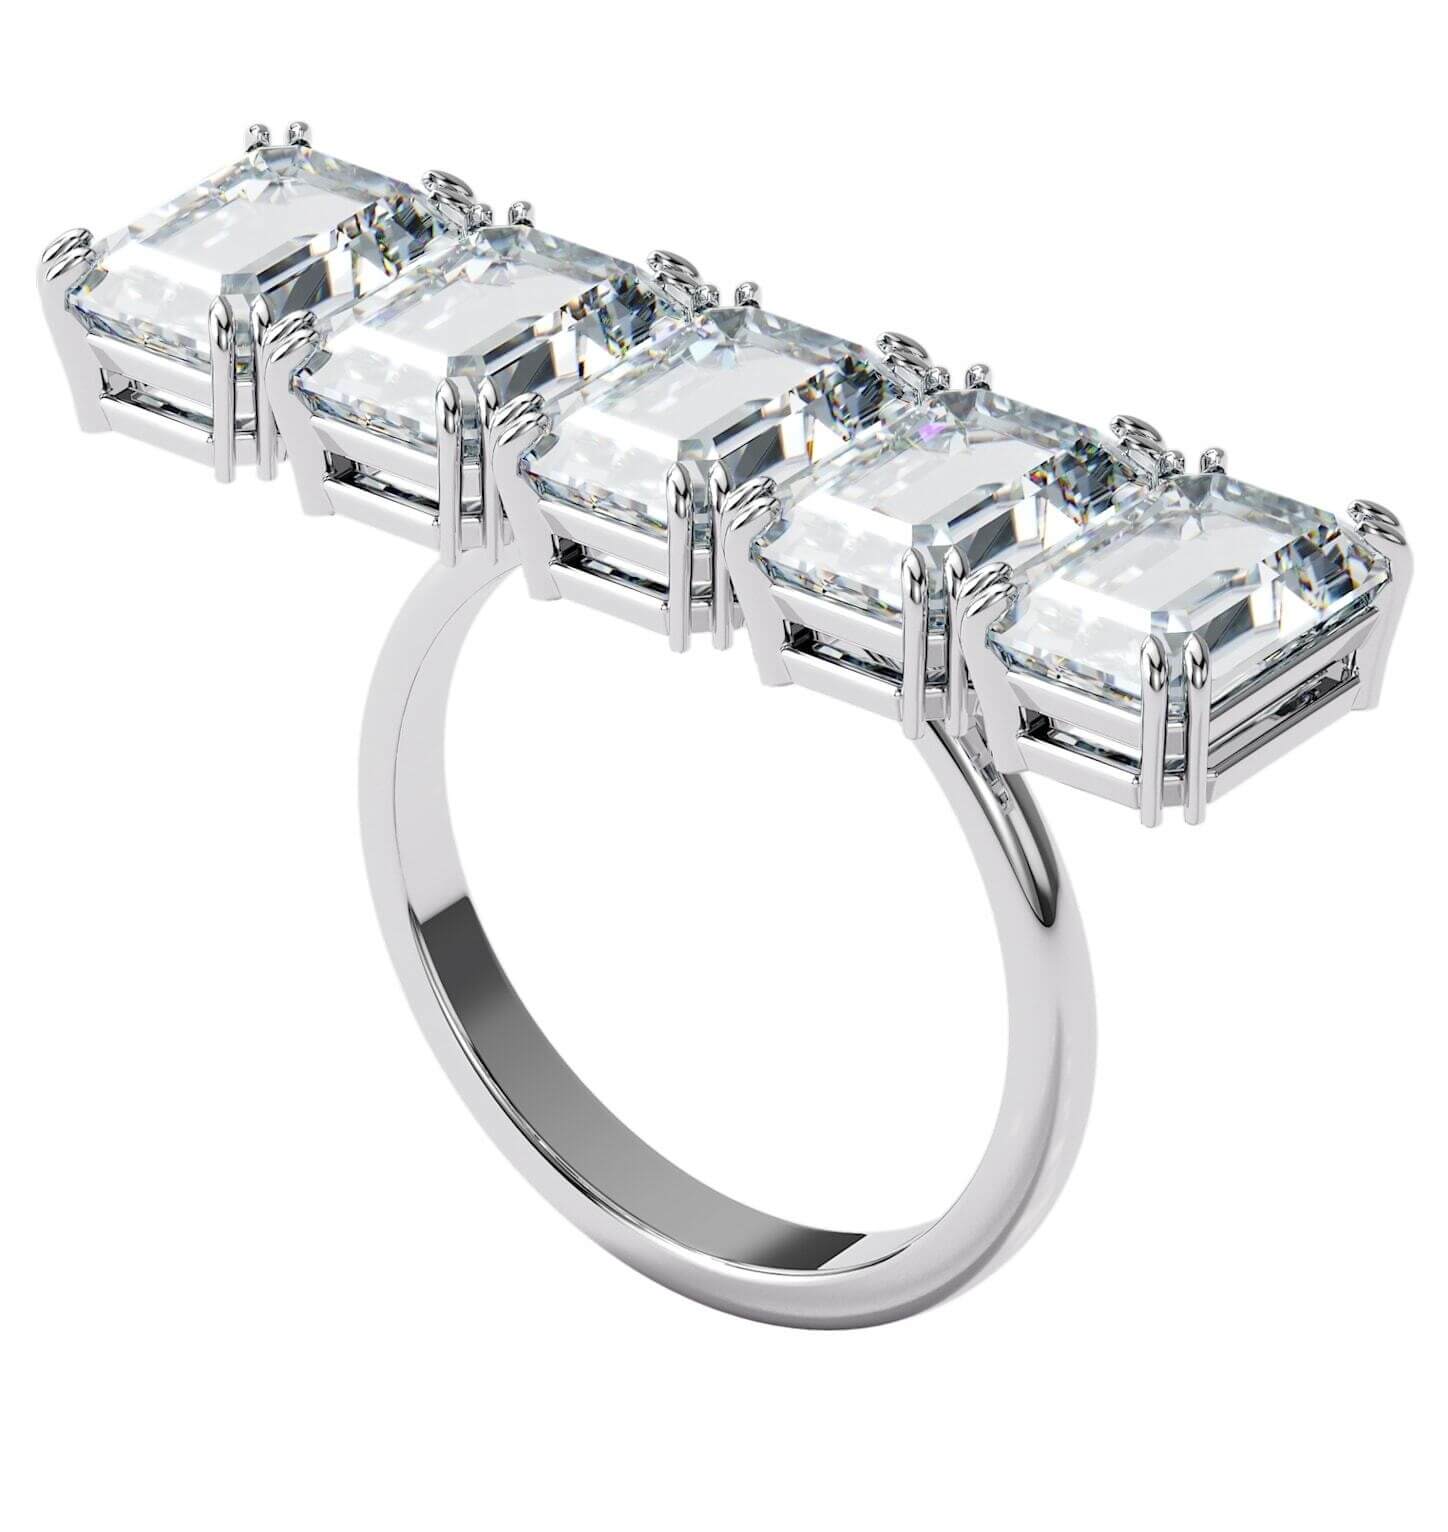 Swarovski Masívny trblietavý prsteň s kryštálmi Millenia 5610730 52 mm